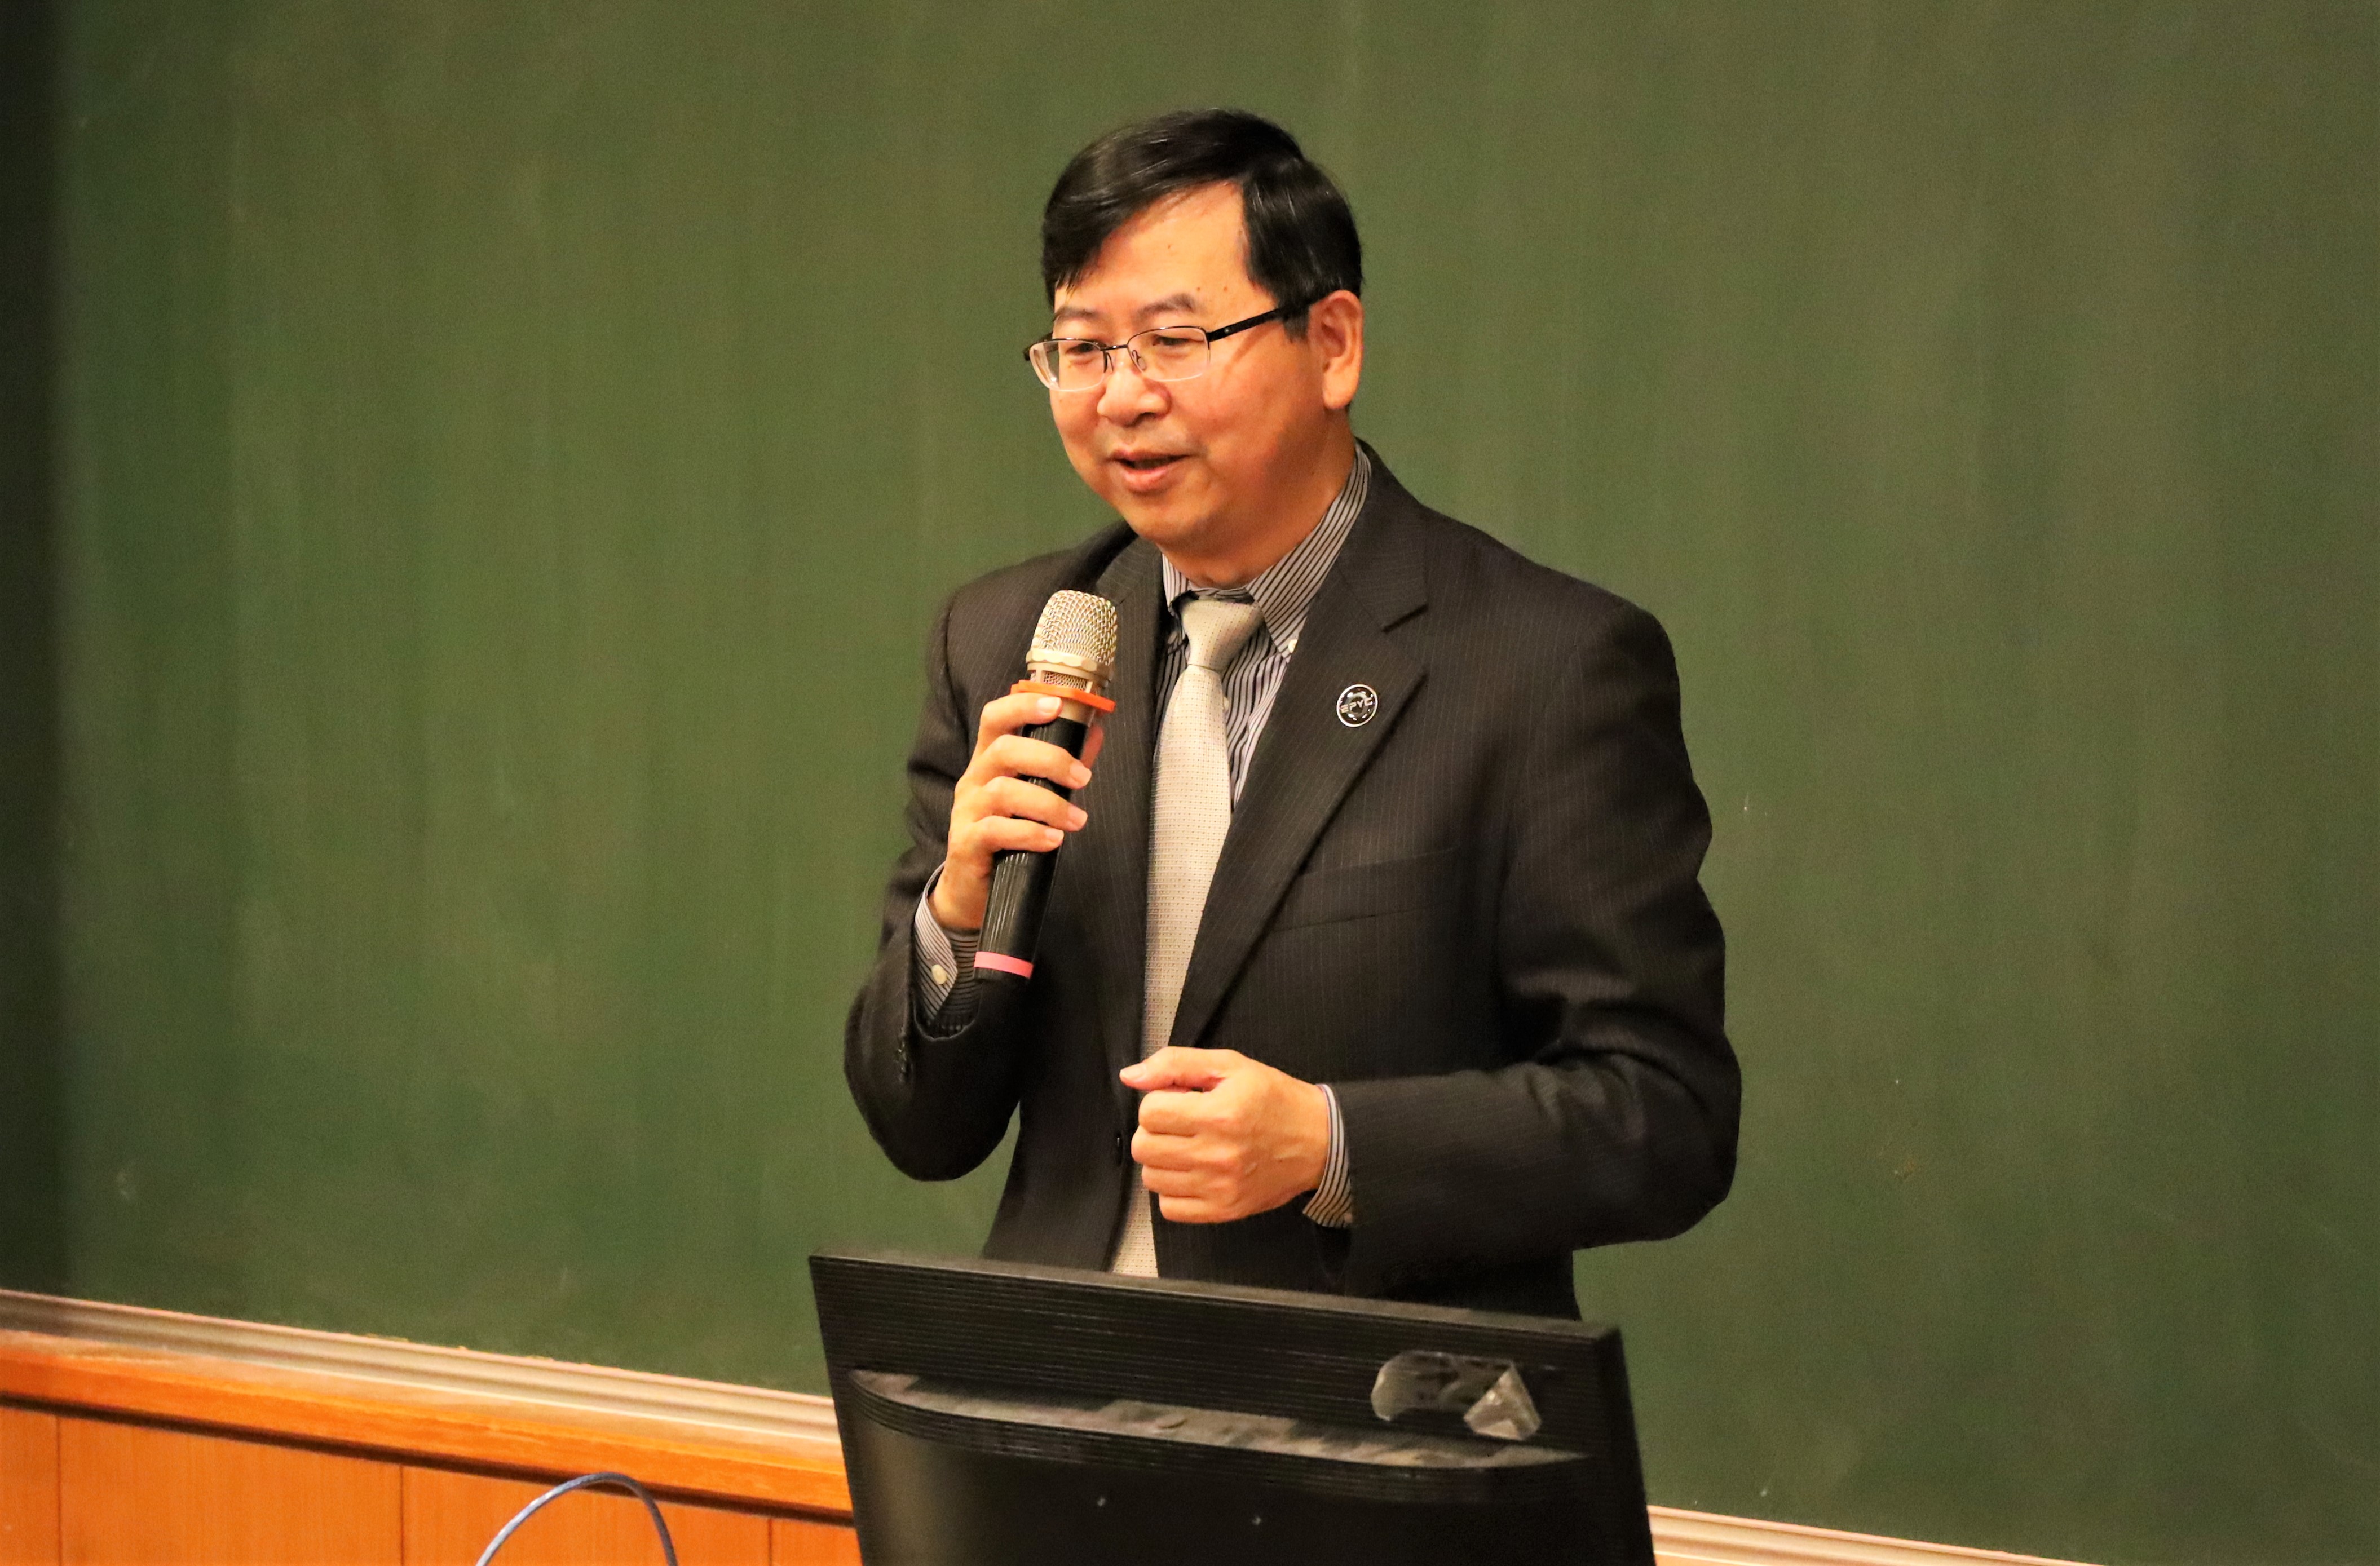 圖為超微台灣分公司資深業務副總林建誠，稱讚蔡校長領先布局，期待雙方有更多合作，在亞大建立中部首座AMD校園實驗室。